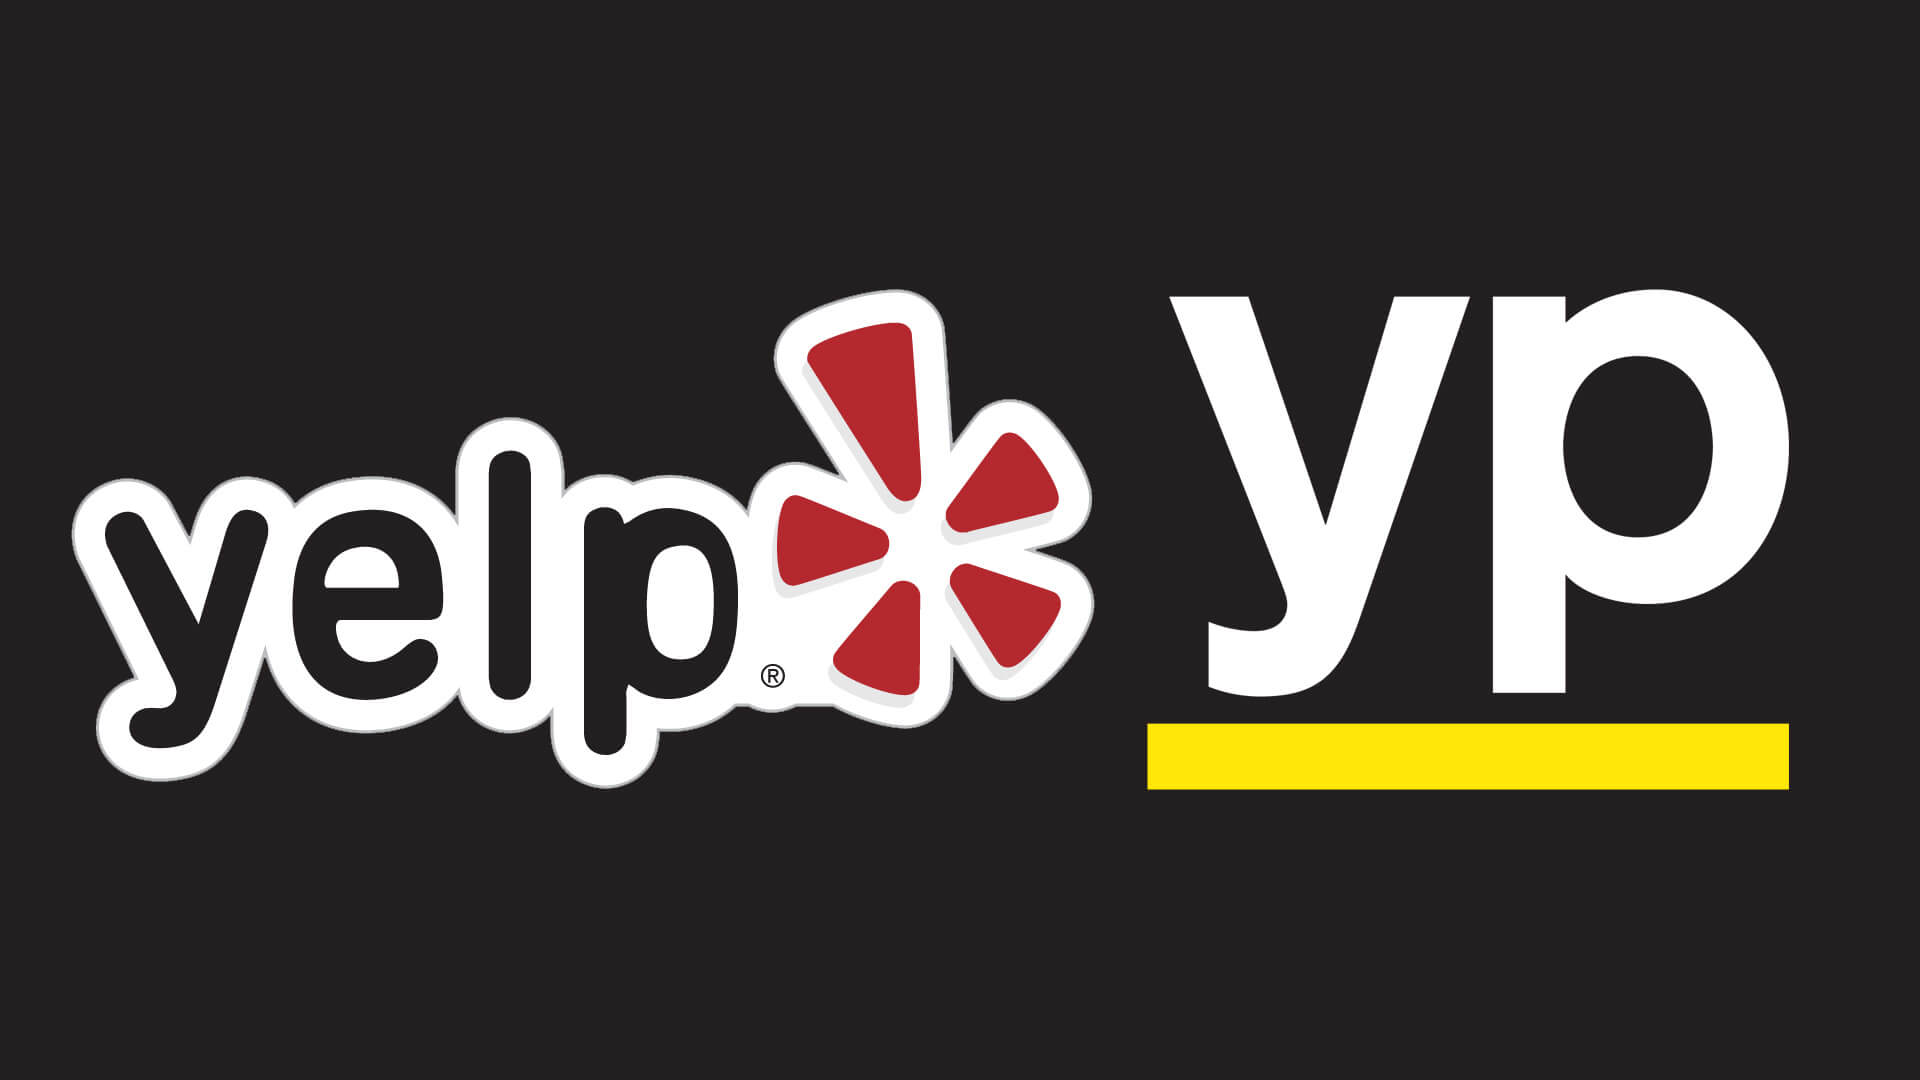 yelp-yp-logos-1920